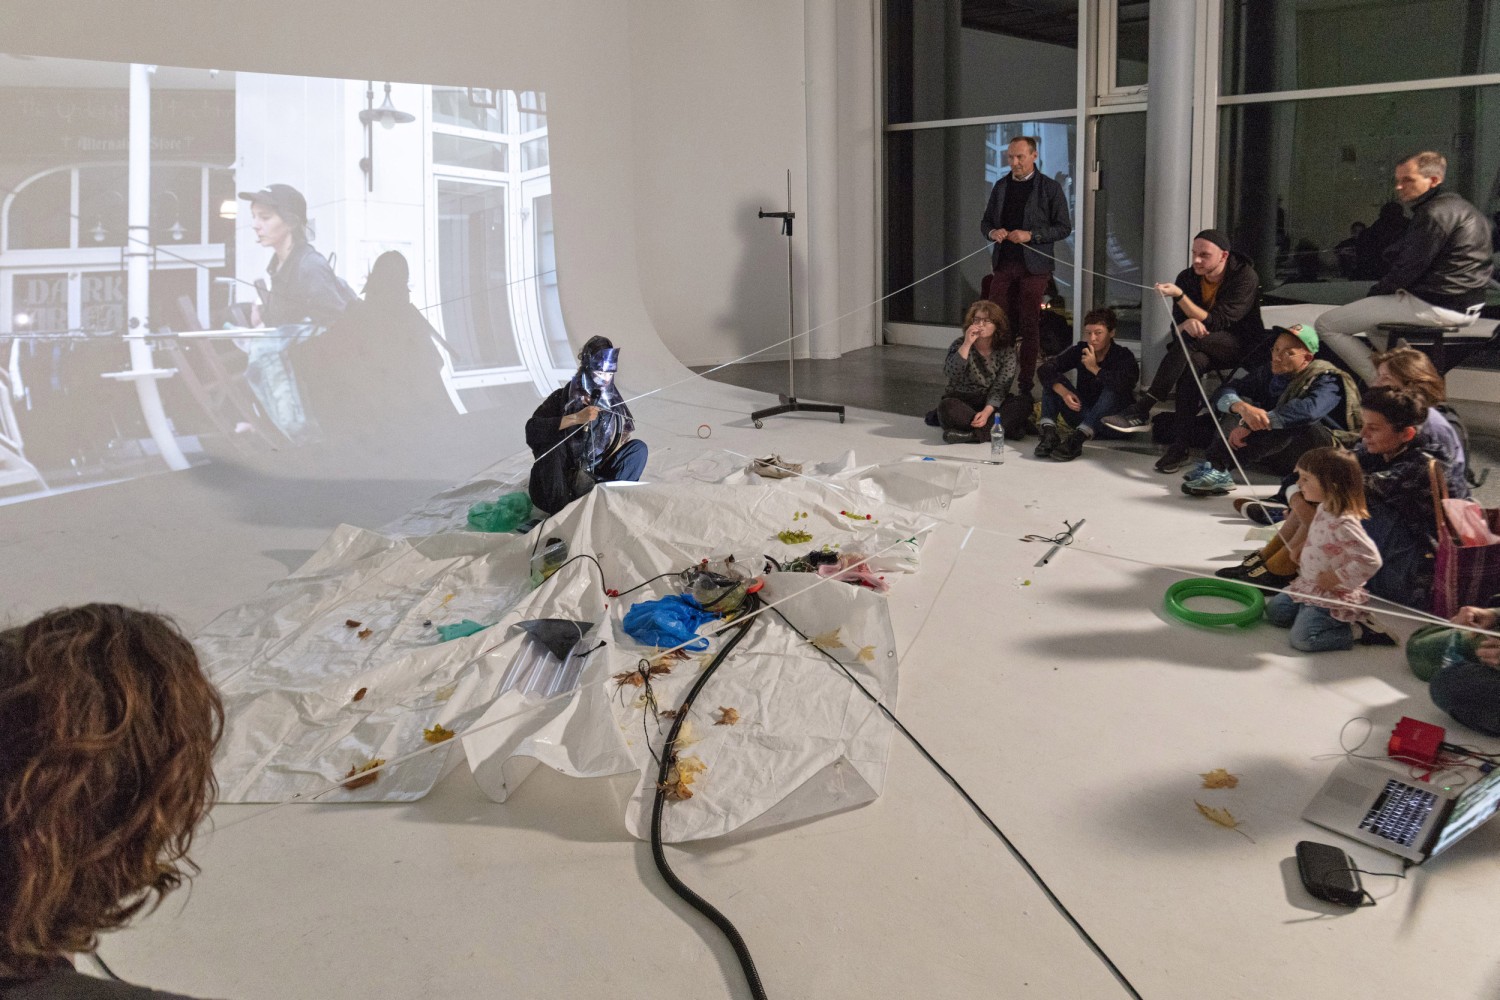 Ayla Pierrot Arendt zeigt ihre Performance "Octopussy on Tour". Die Künstlerin entwirft mit Octopussy Klanglandschaften, die sich aus Sprachfragmenten, elektronischen Musiksequenzen sowie digitalem Bildmaterial zusammensetzen. Arendt referiert in ihrer Performance auf Orte der Gemeinschaft, um Erfahrungen unterschiedlich erlebter Lebenswirklichkeiten zusammenzuführen.